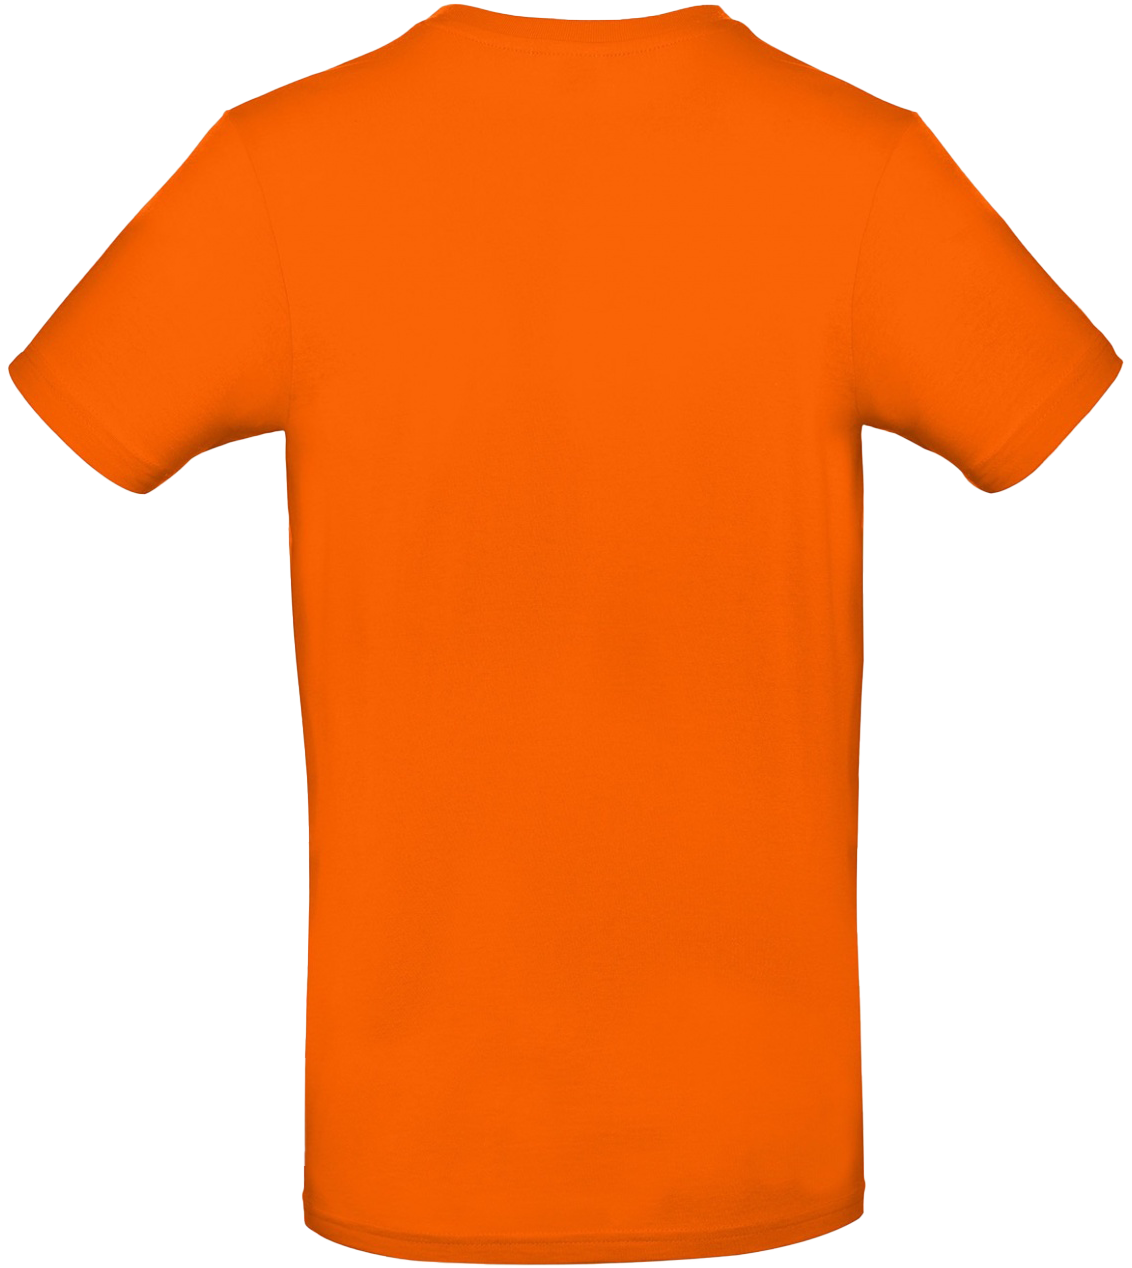 T-shirt E#190 Orange 54